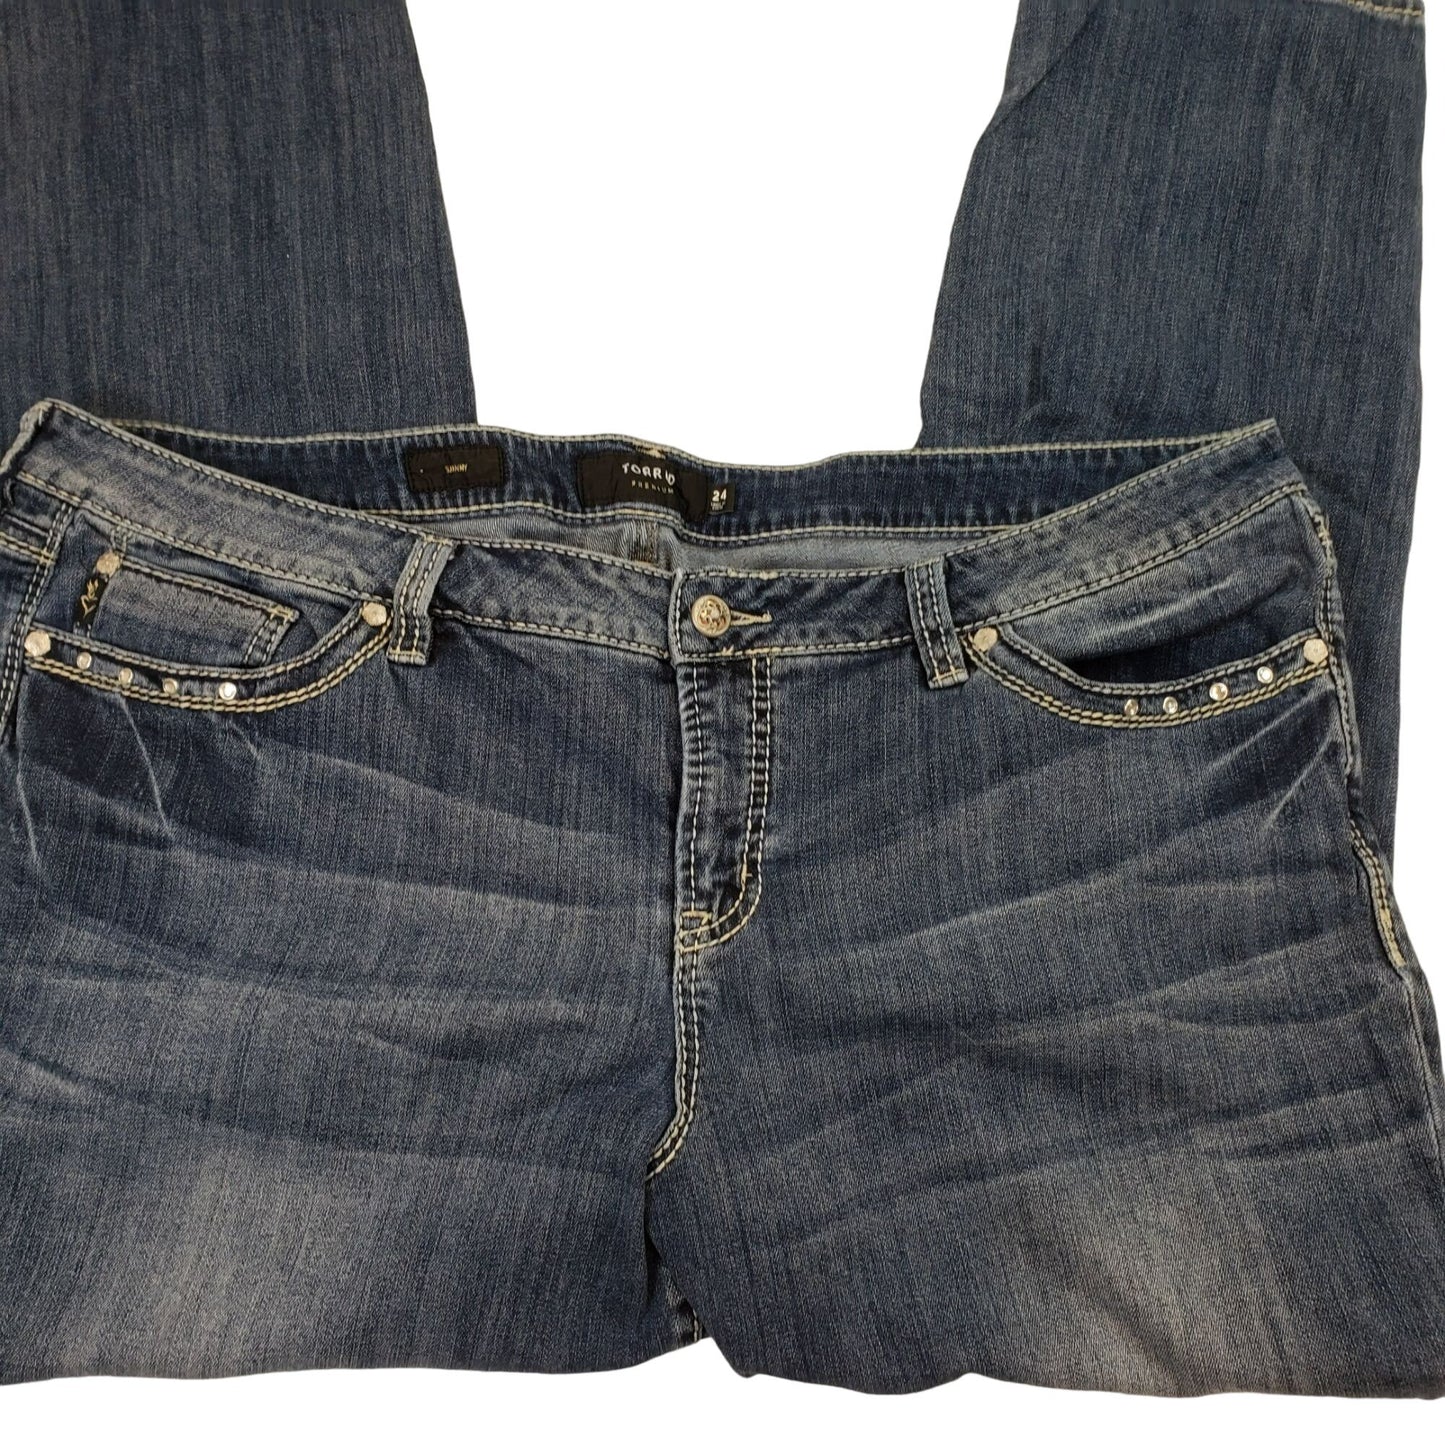 Torrid Premium Embellished Skinny Jeans Size 24